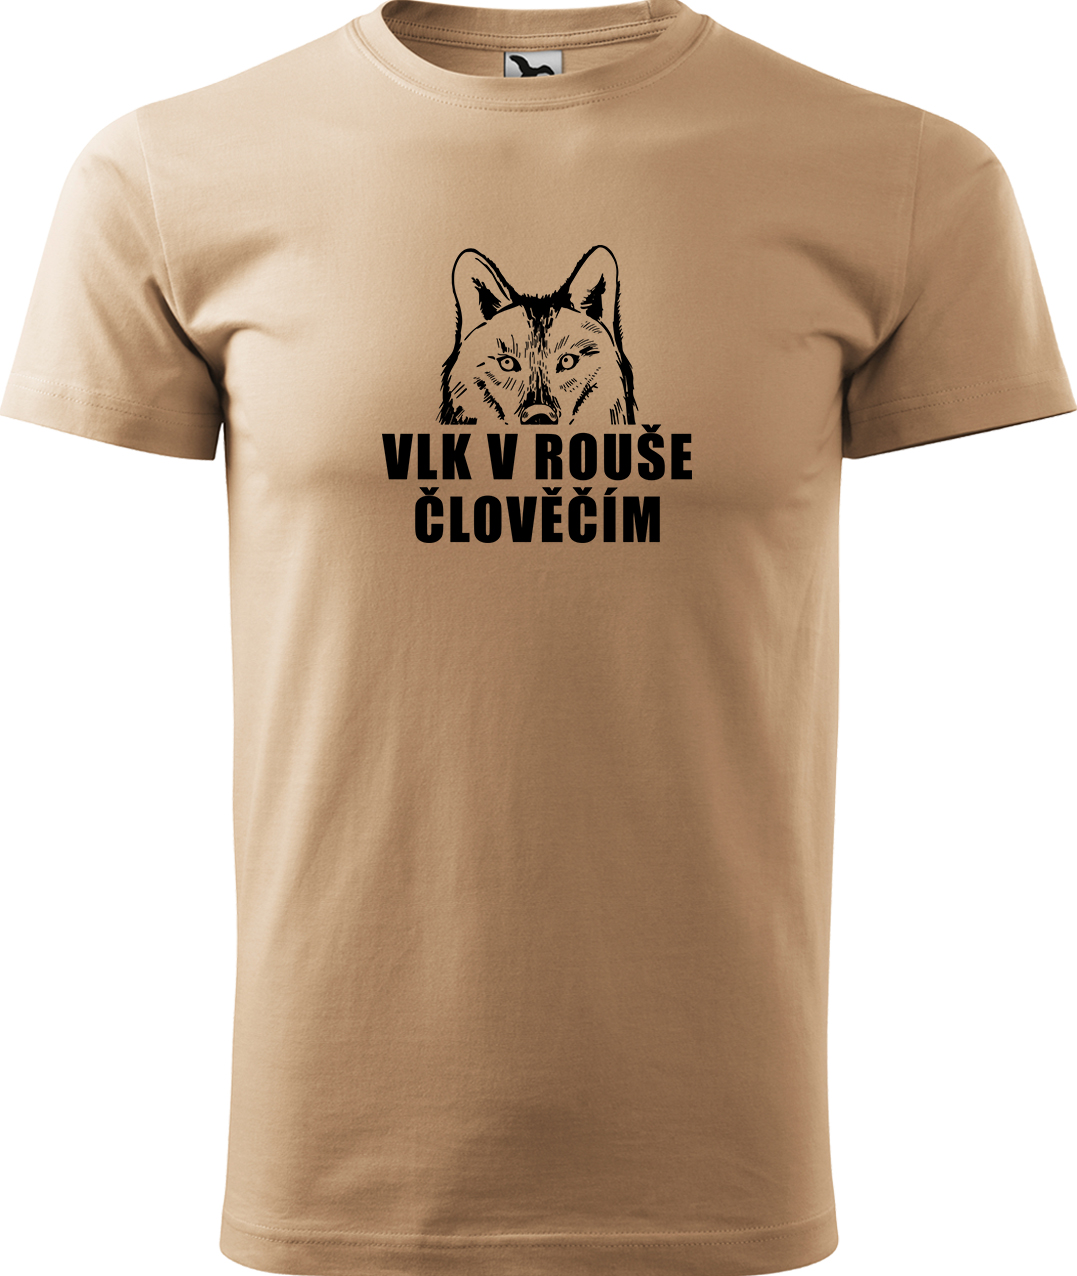 Pánské tričko s vlkem - Vlk v rouše člověčím Velikost: S, Barva: Písková (08), Střih: pánský